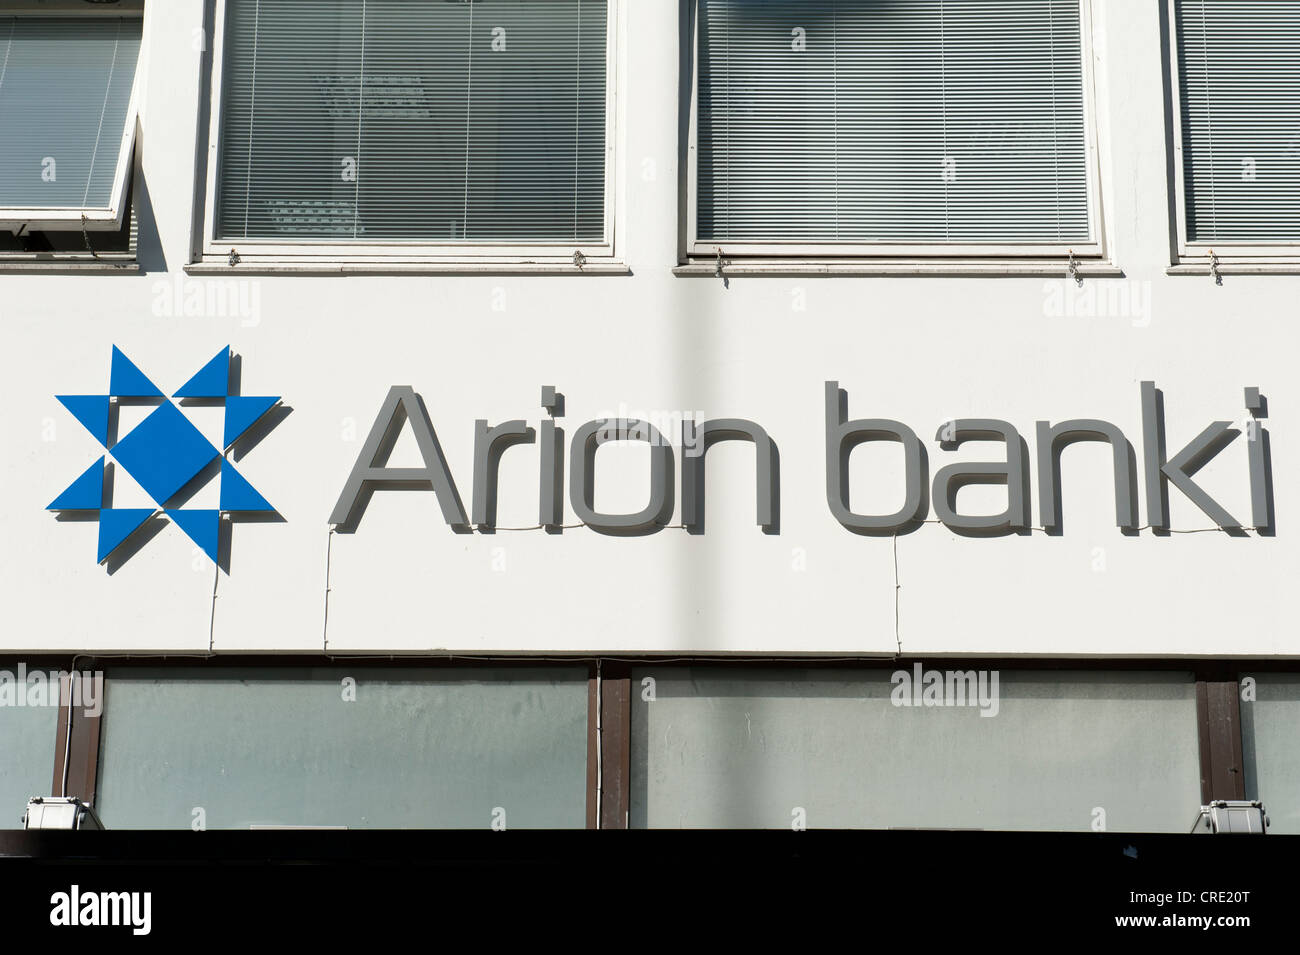 Construcción de la fachada con el logo de Arion Banki, antiguamente Kaupthing Banki, Banco Kaupthing, Reykjavik, Islandia, Escandinavia Foto de stock